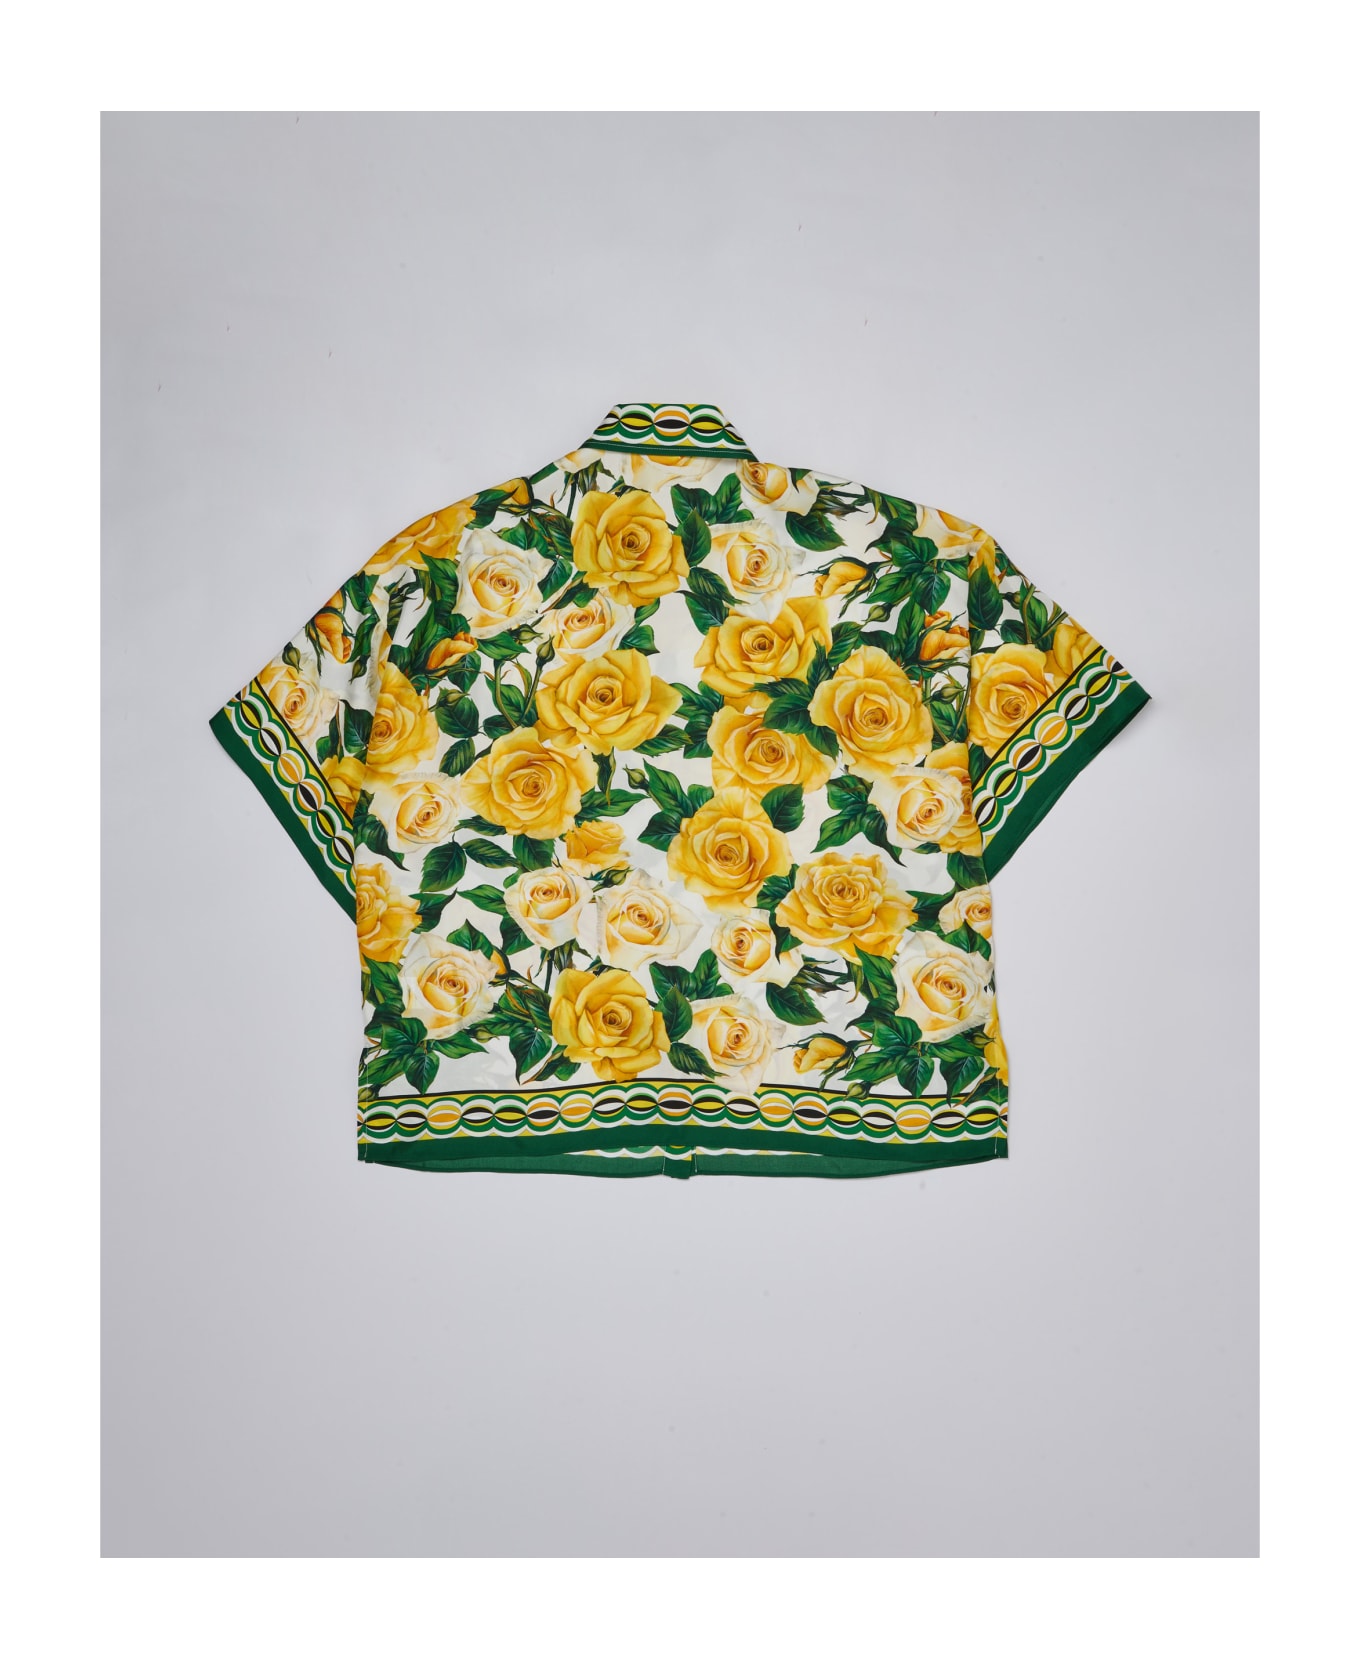 Dolce & Gabbana Shirt Shirt - BIANCO-GIALLO